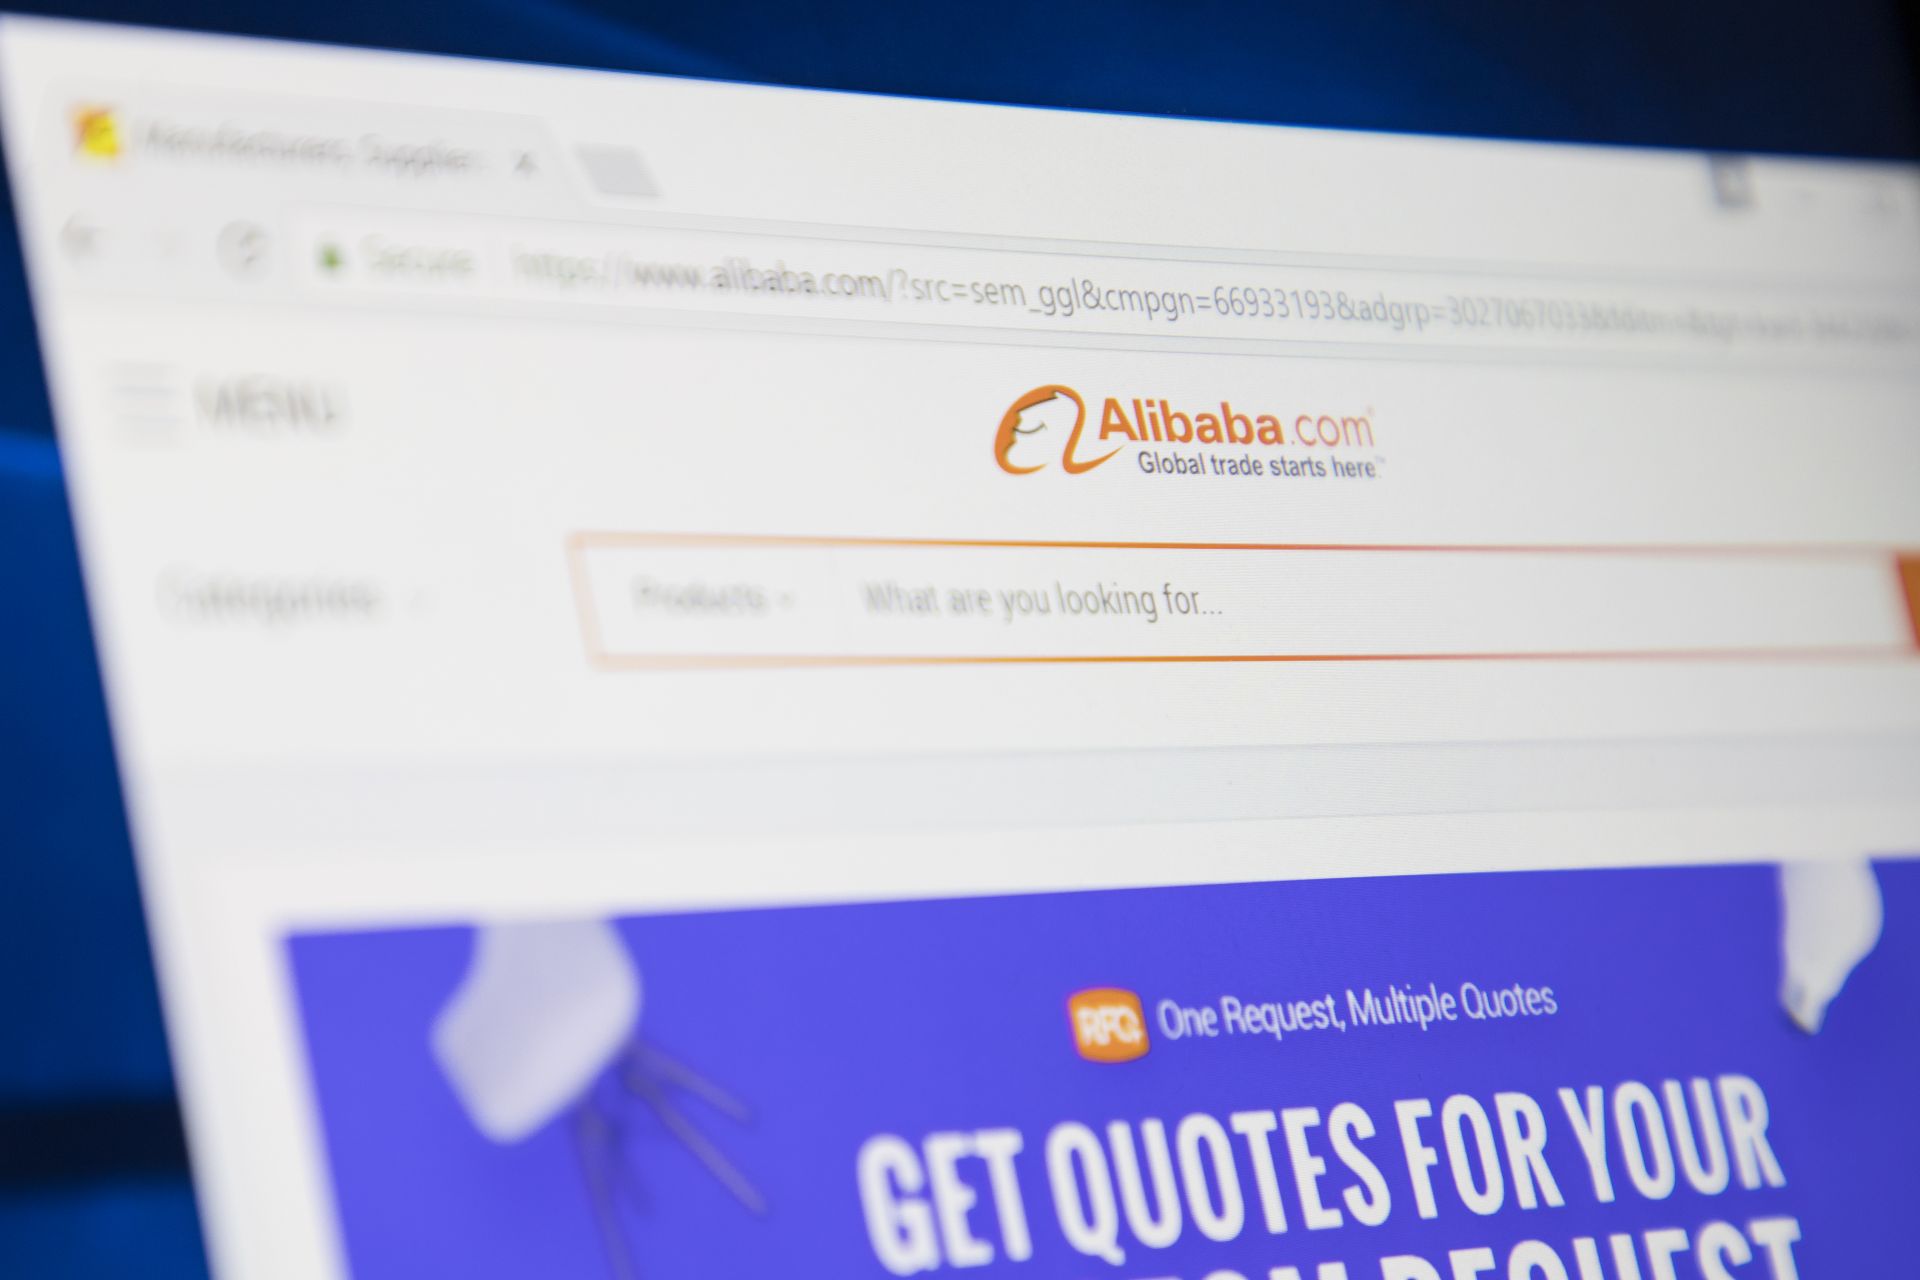 Китайските компании Тенсент (Tencent) и Алибаба (Alibaba) за първи път в историята попаднаха в топ 10 на най-скъпите марки в света